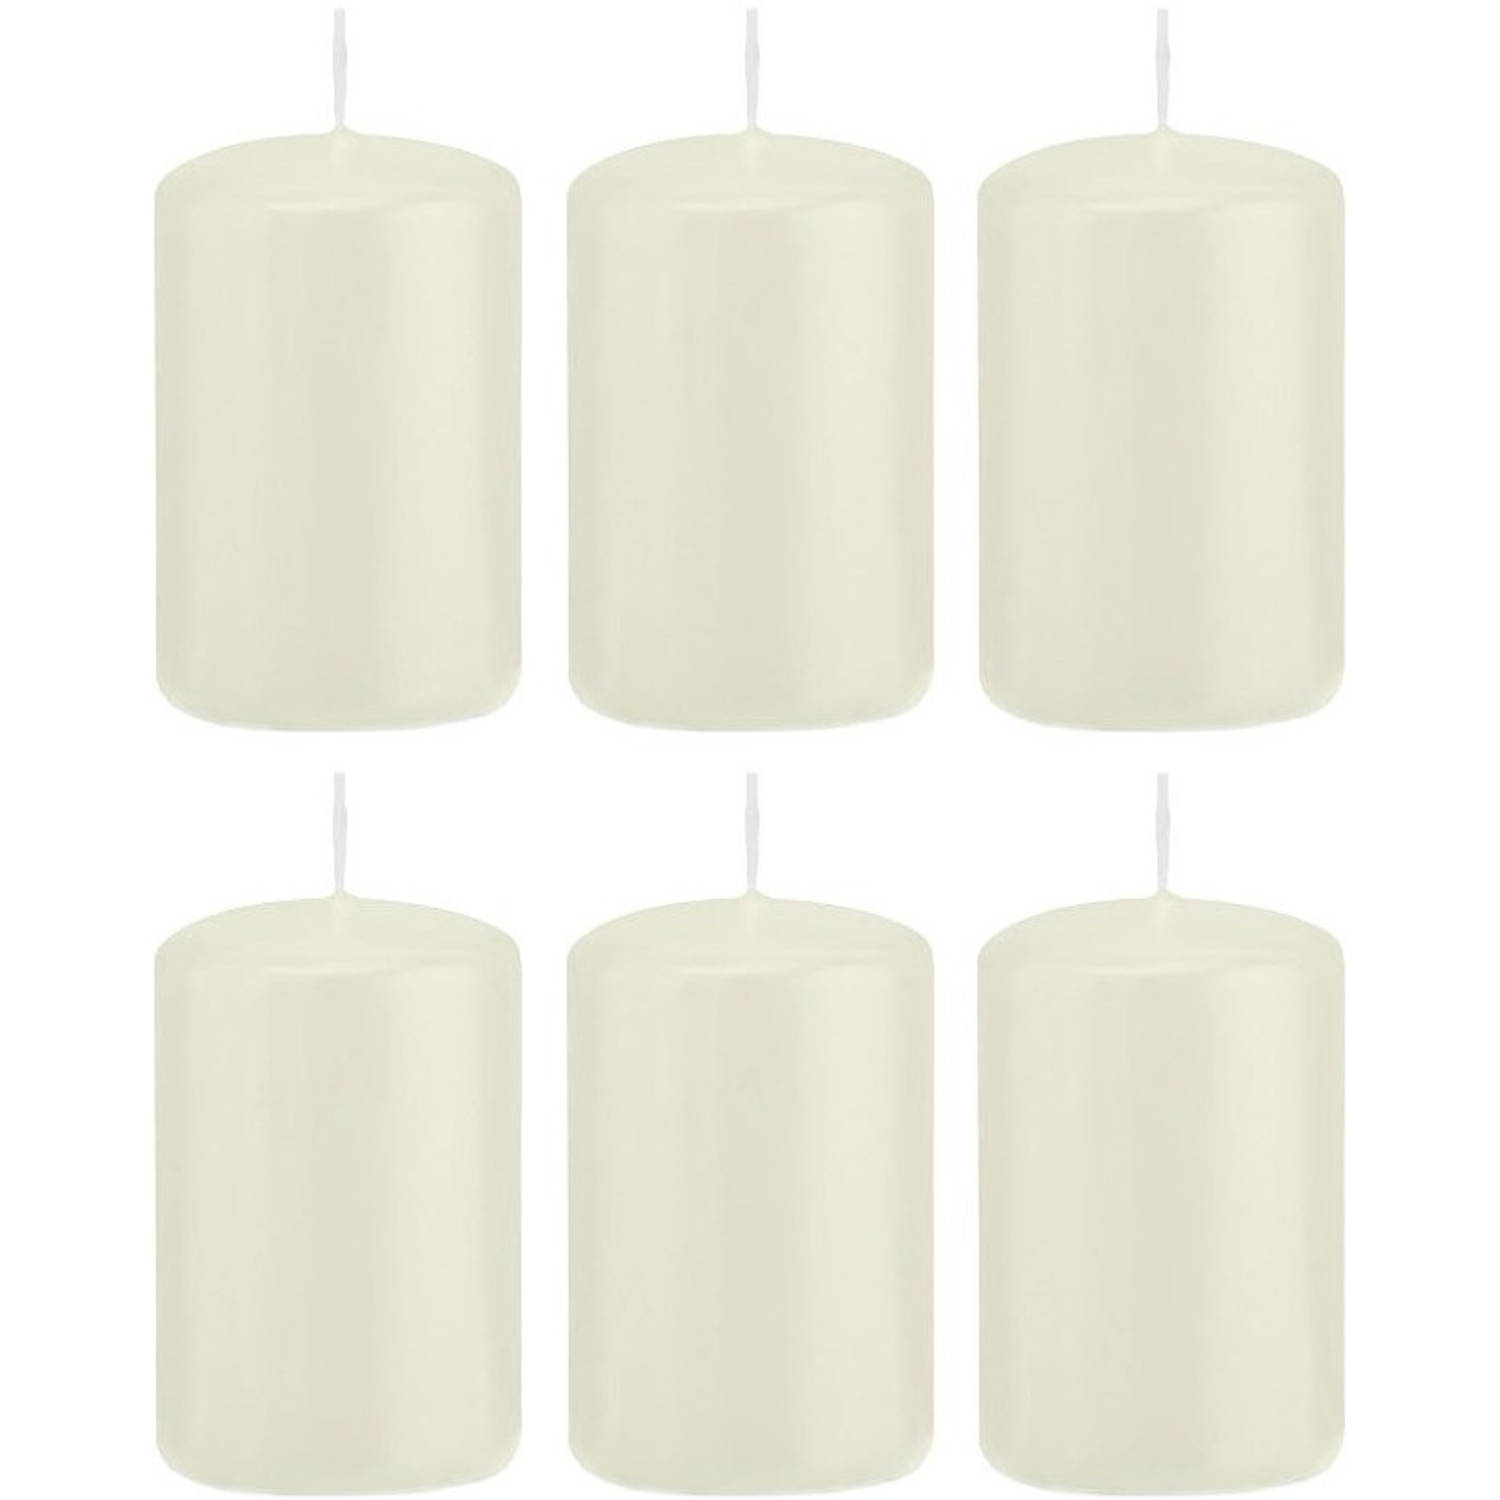 Trend Candles 6x Ivoorte Cilinderkaars/stompkaars 5 X 8 Cm 18 Branduren - Geurloze Kaarsen - Woondecoraties - Wit